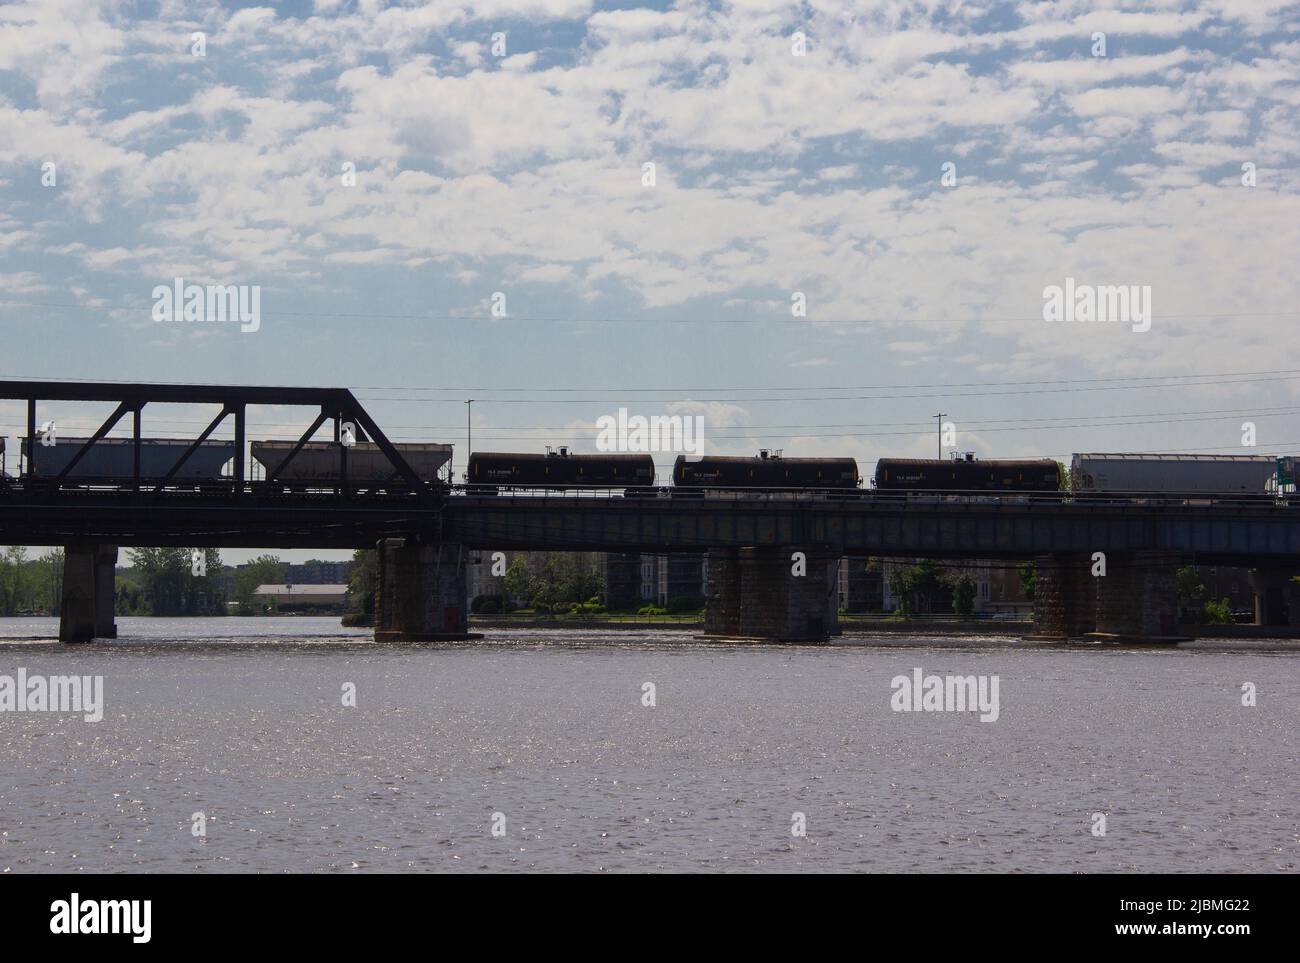 Freight train on a rail bridge Stock Photo